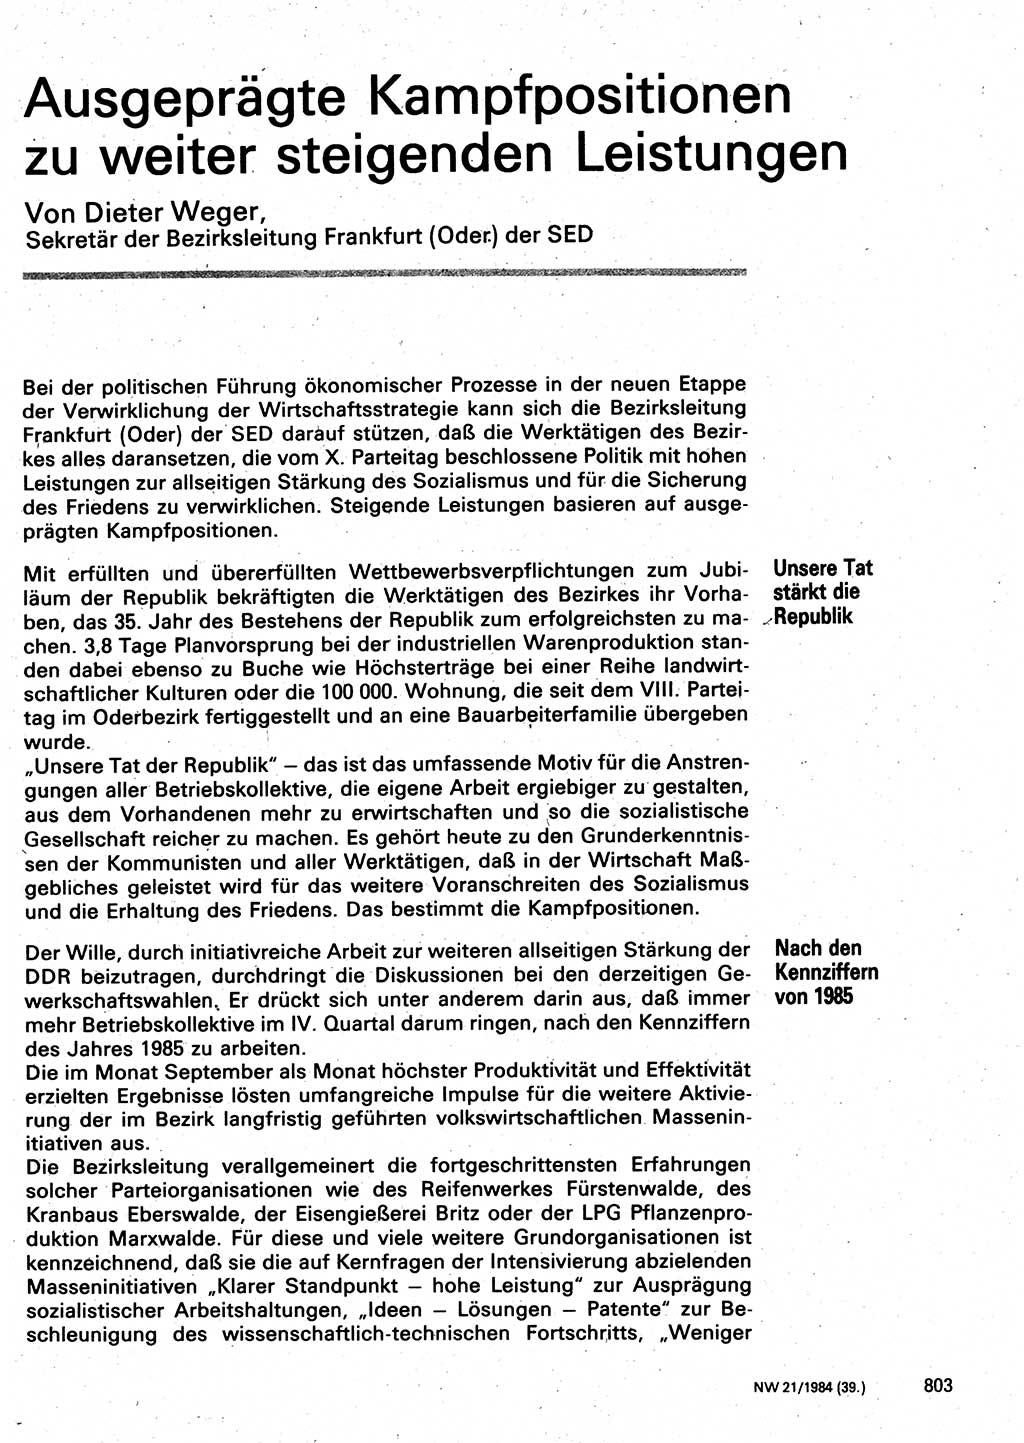 Neuer Weg (NW), Organ des Zentralkomitees (ZK) der SED (Sozialistische Einheitspartei Deutschlands) für Fragen des Parteilebens, 39. Jahrgang [Deutsche Demokratische Republik (DDR)] 1984, Seite 803 (NW ZK SED DDR 1984, S. 803)